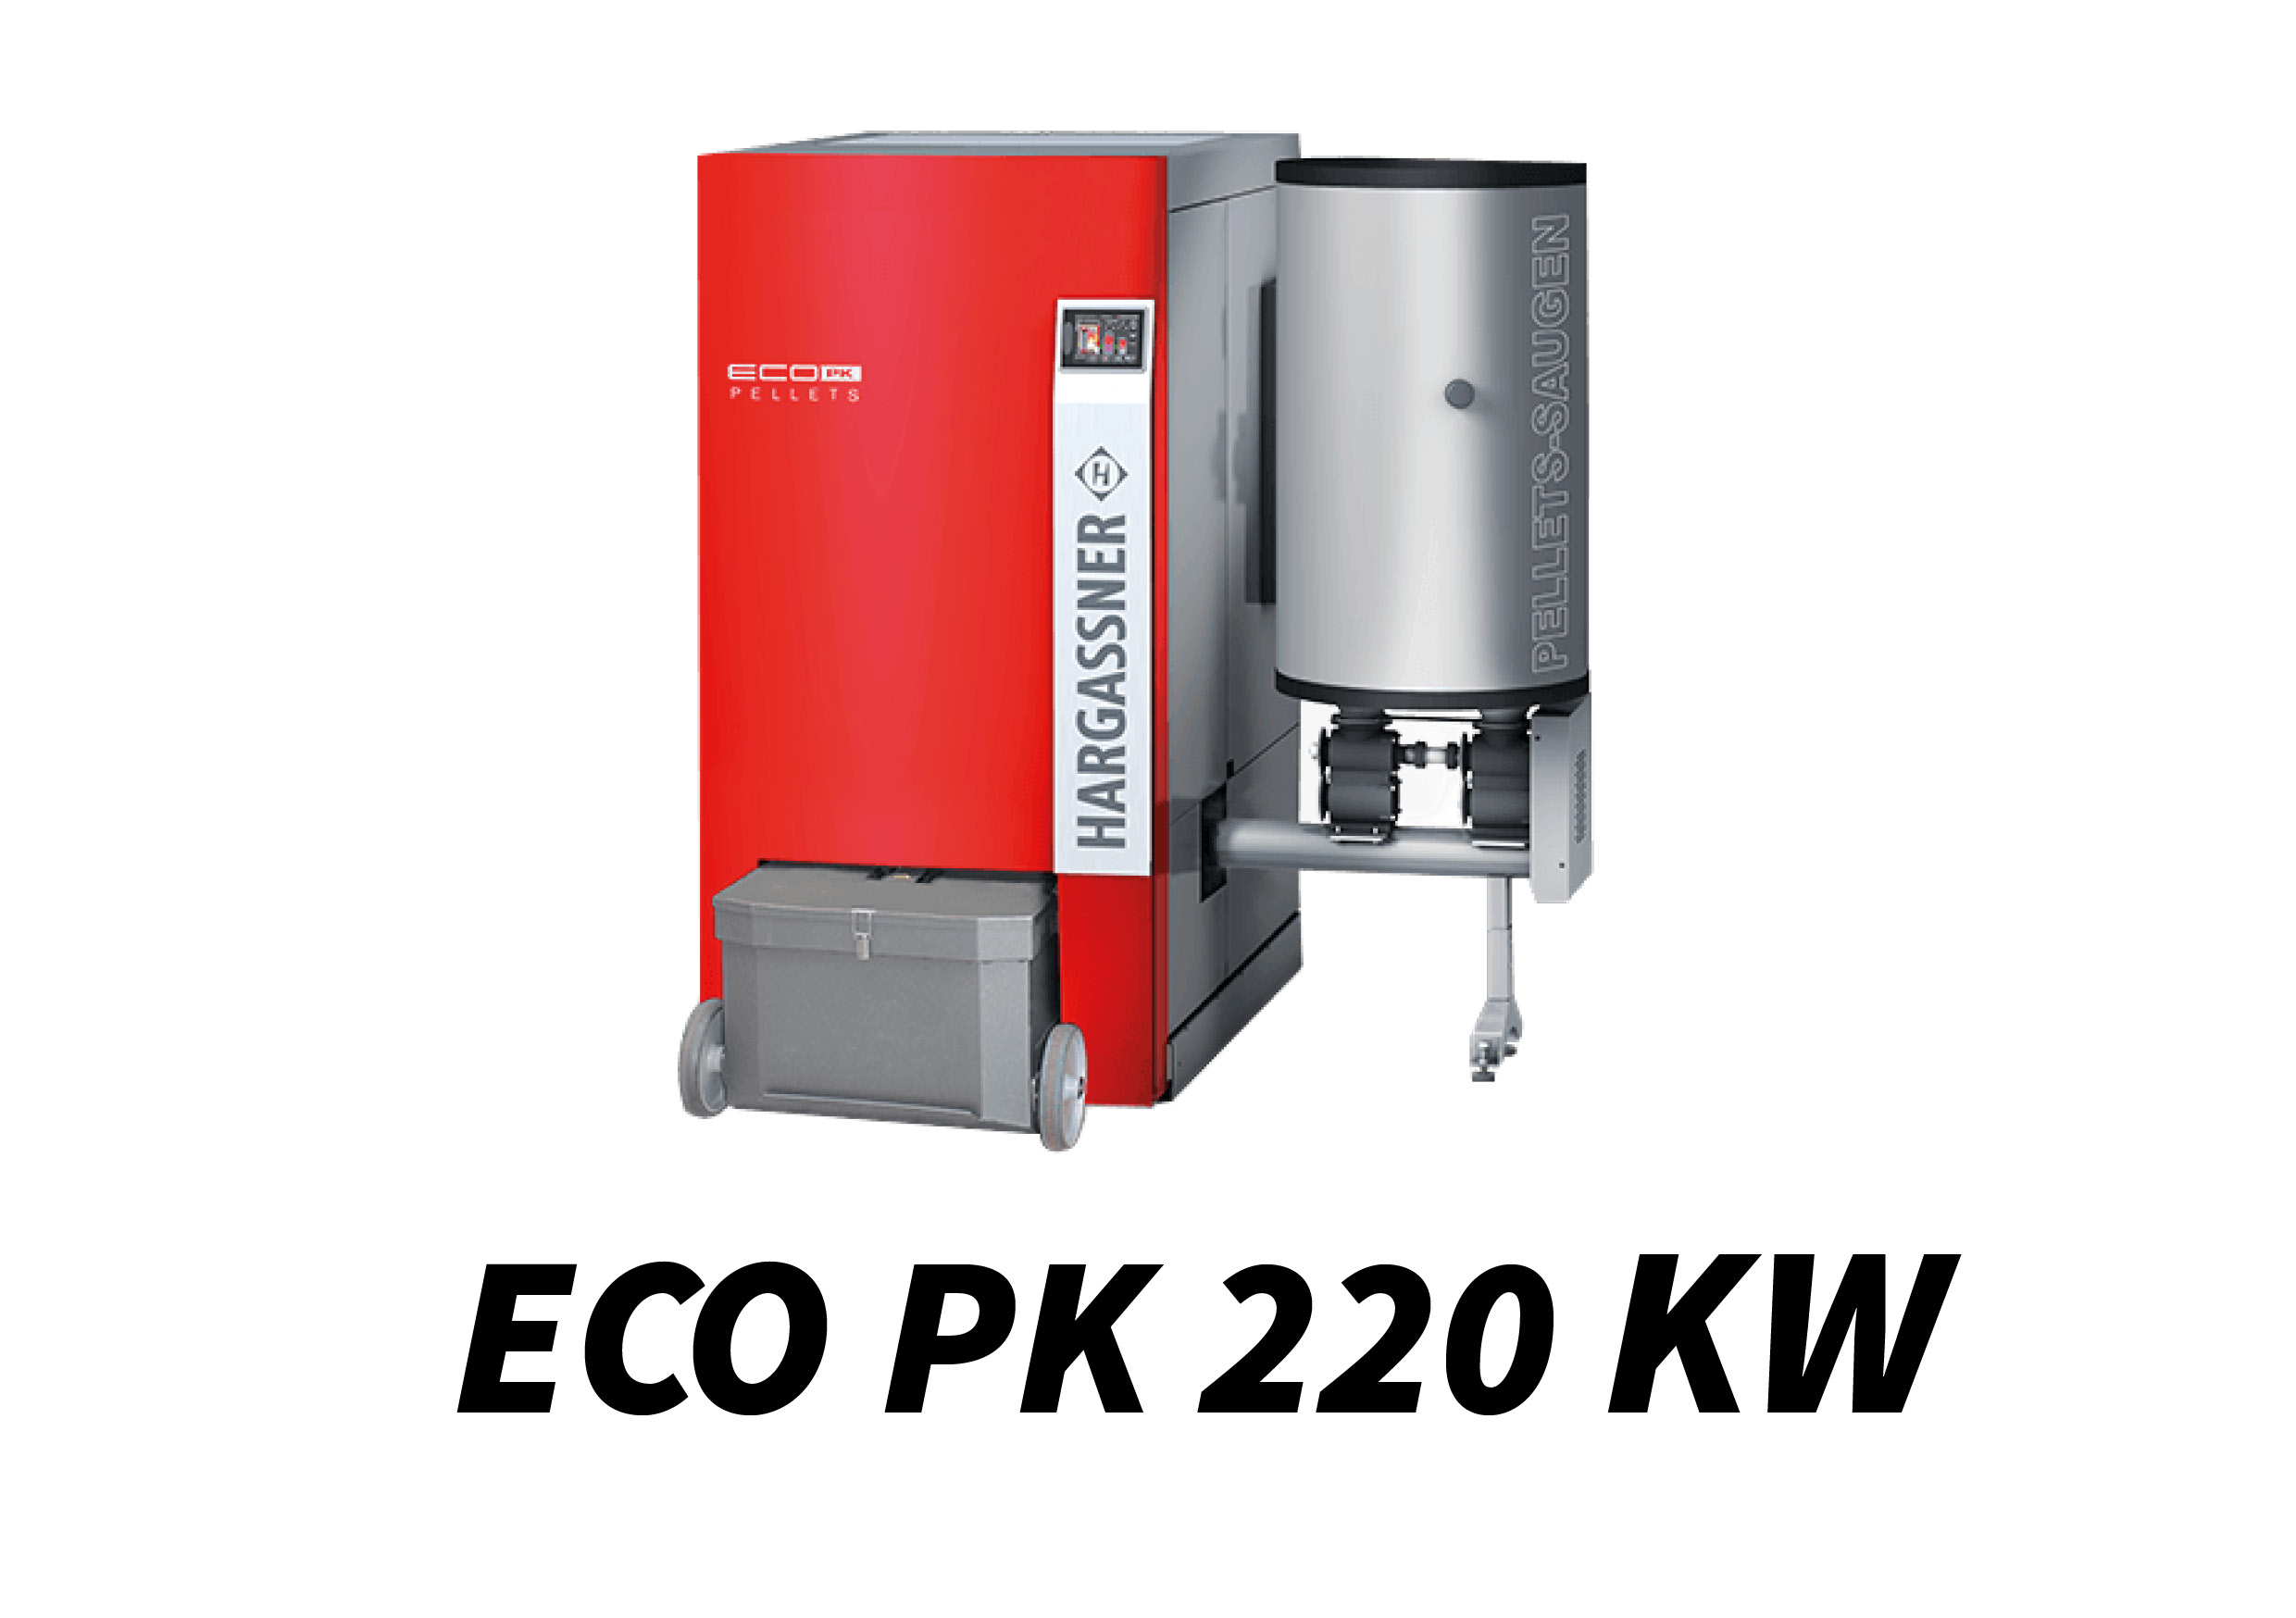 ECO PK 220 kW